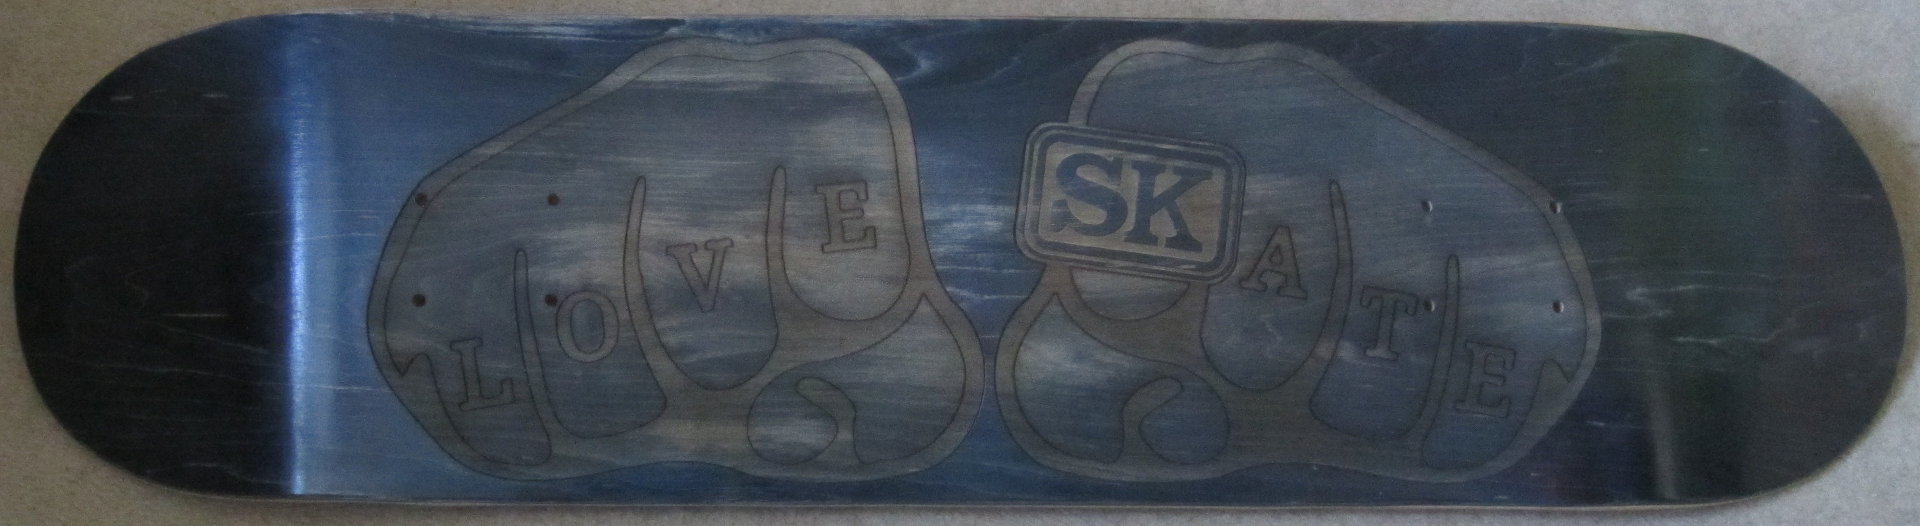 Love Skate laser engraved skateboard